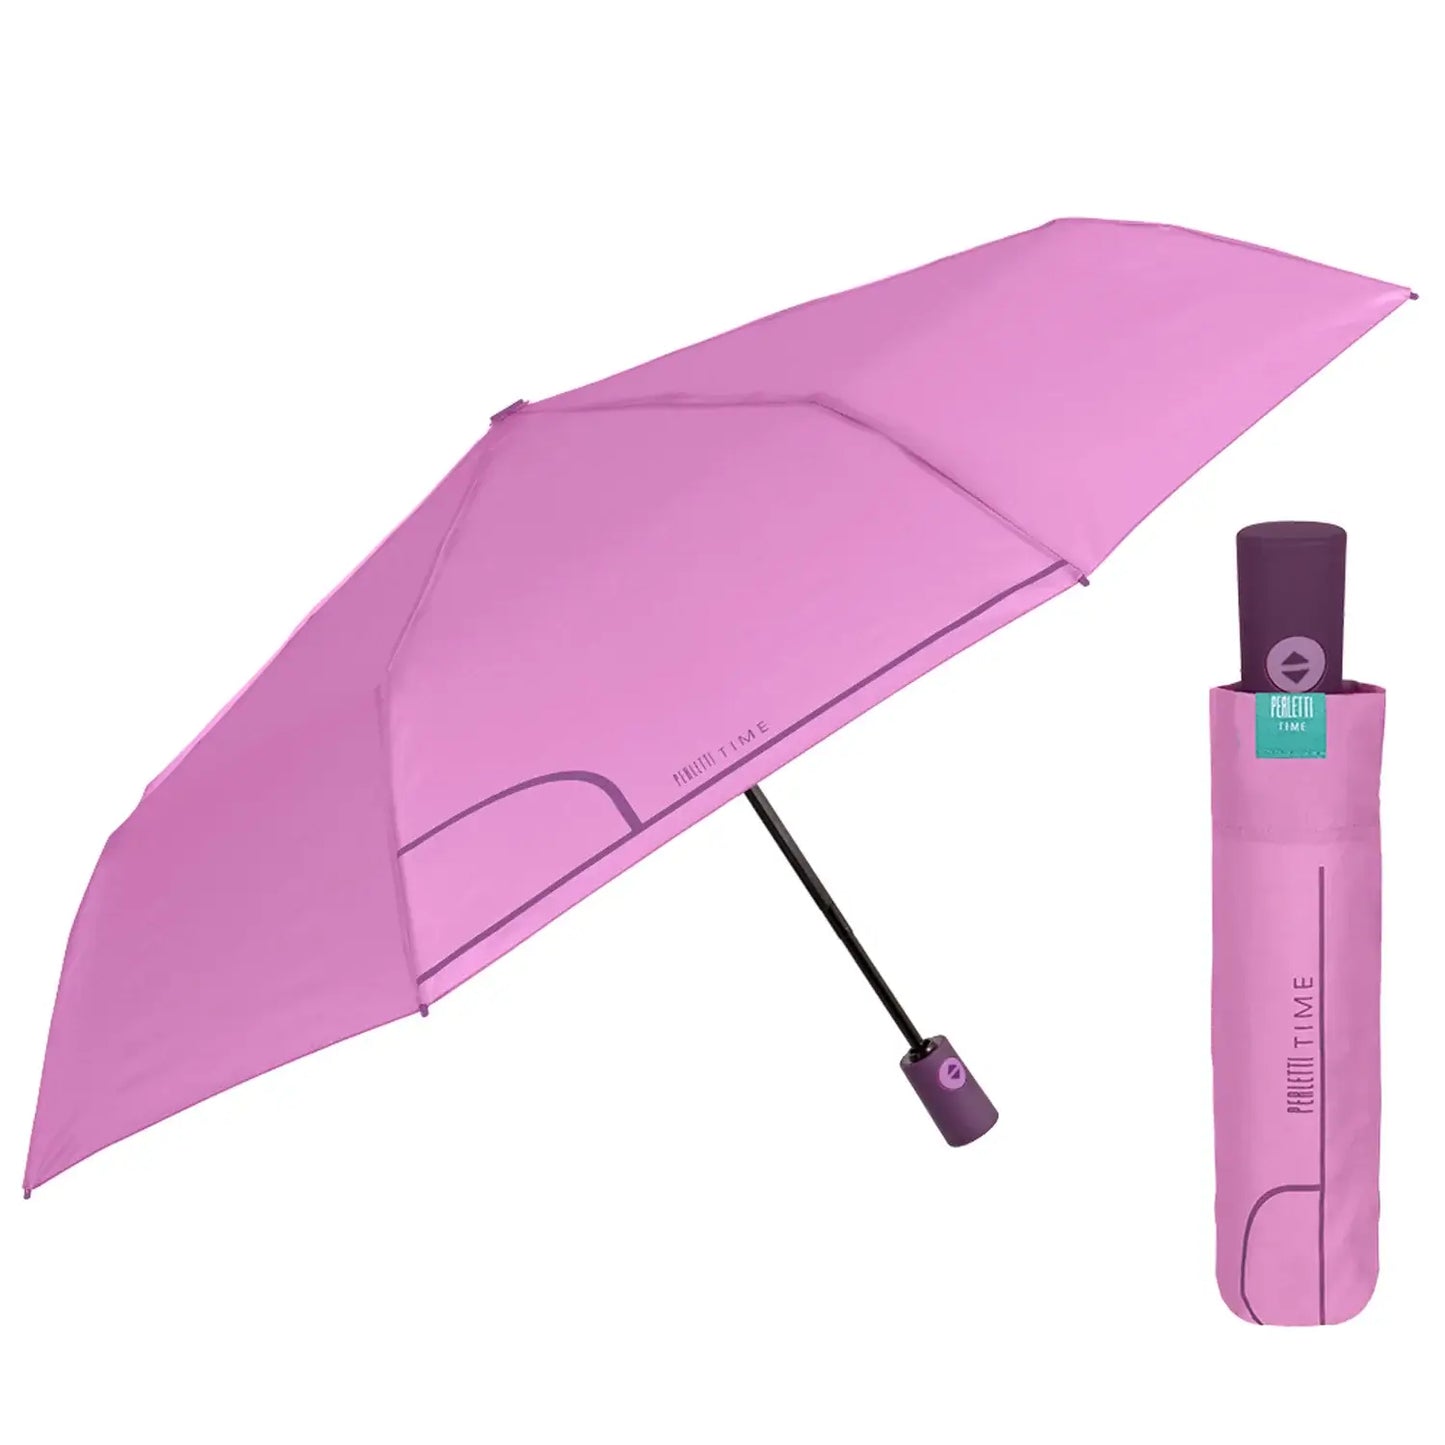 compacte paraplu tiener lila roze Perletti vouwparaplu met hoes opent automatisch zijaanzicht open en dichtgevouwen